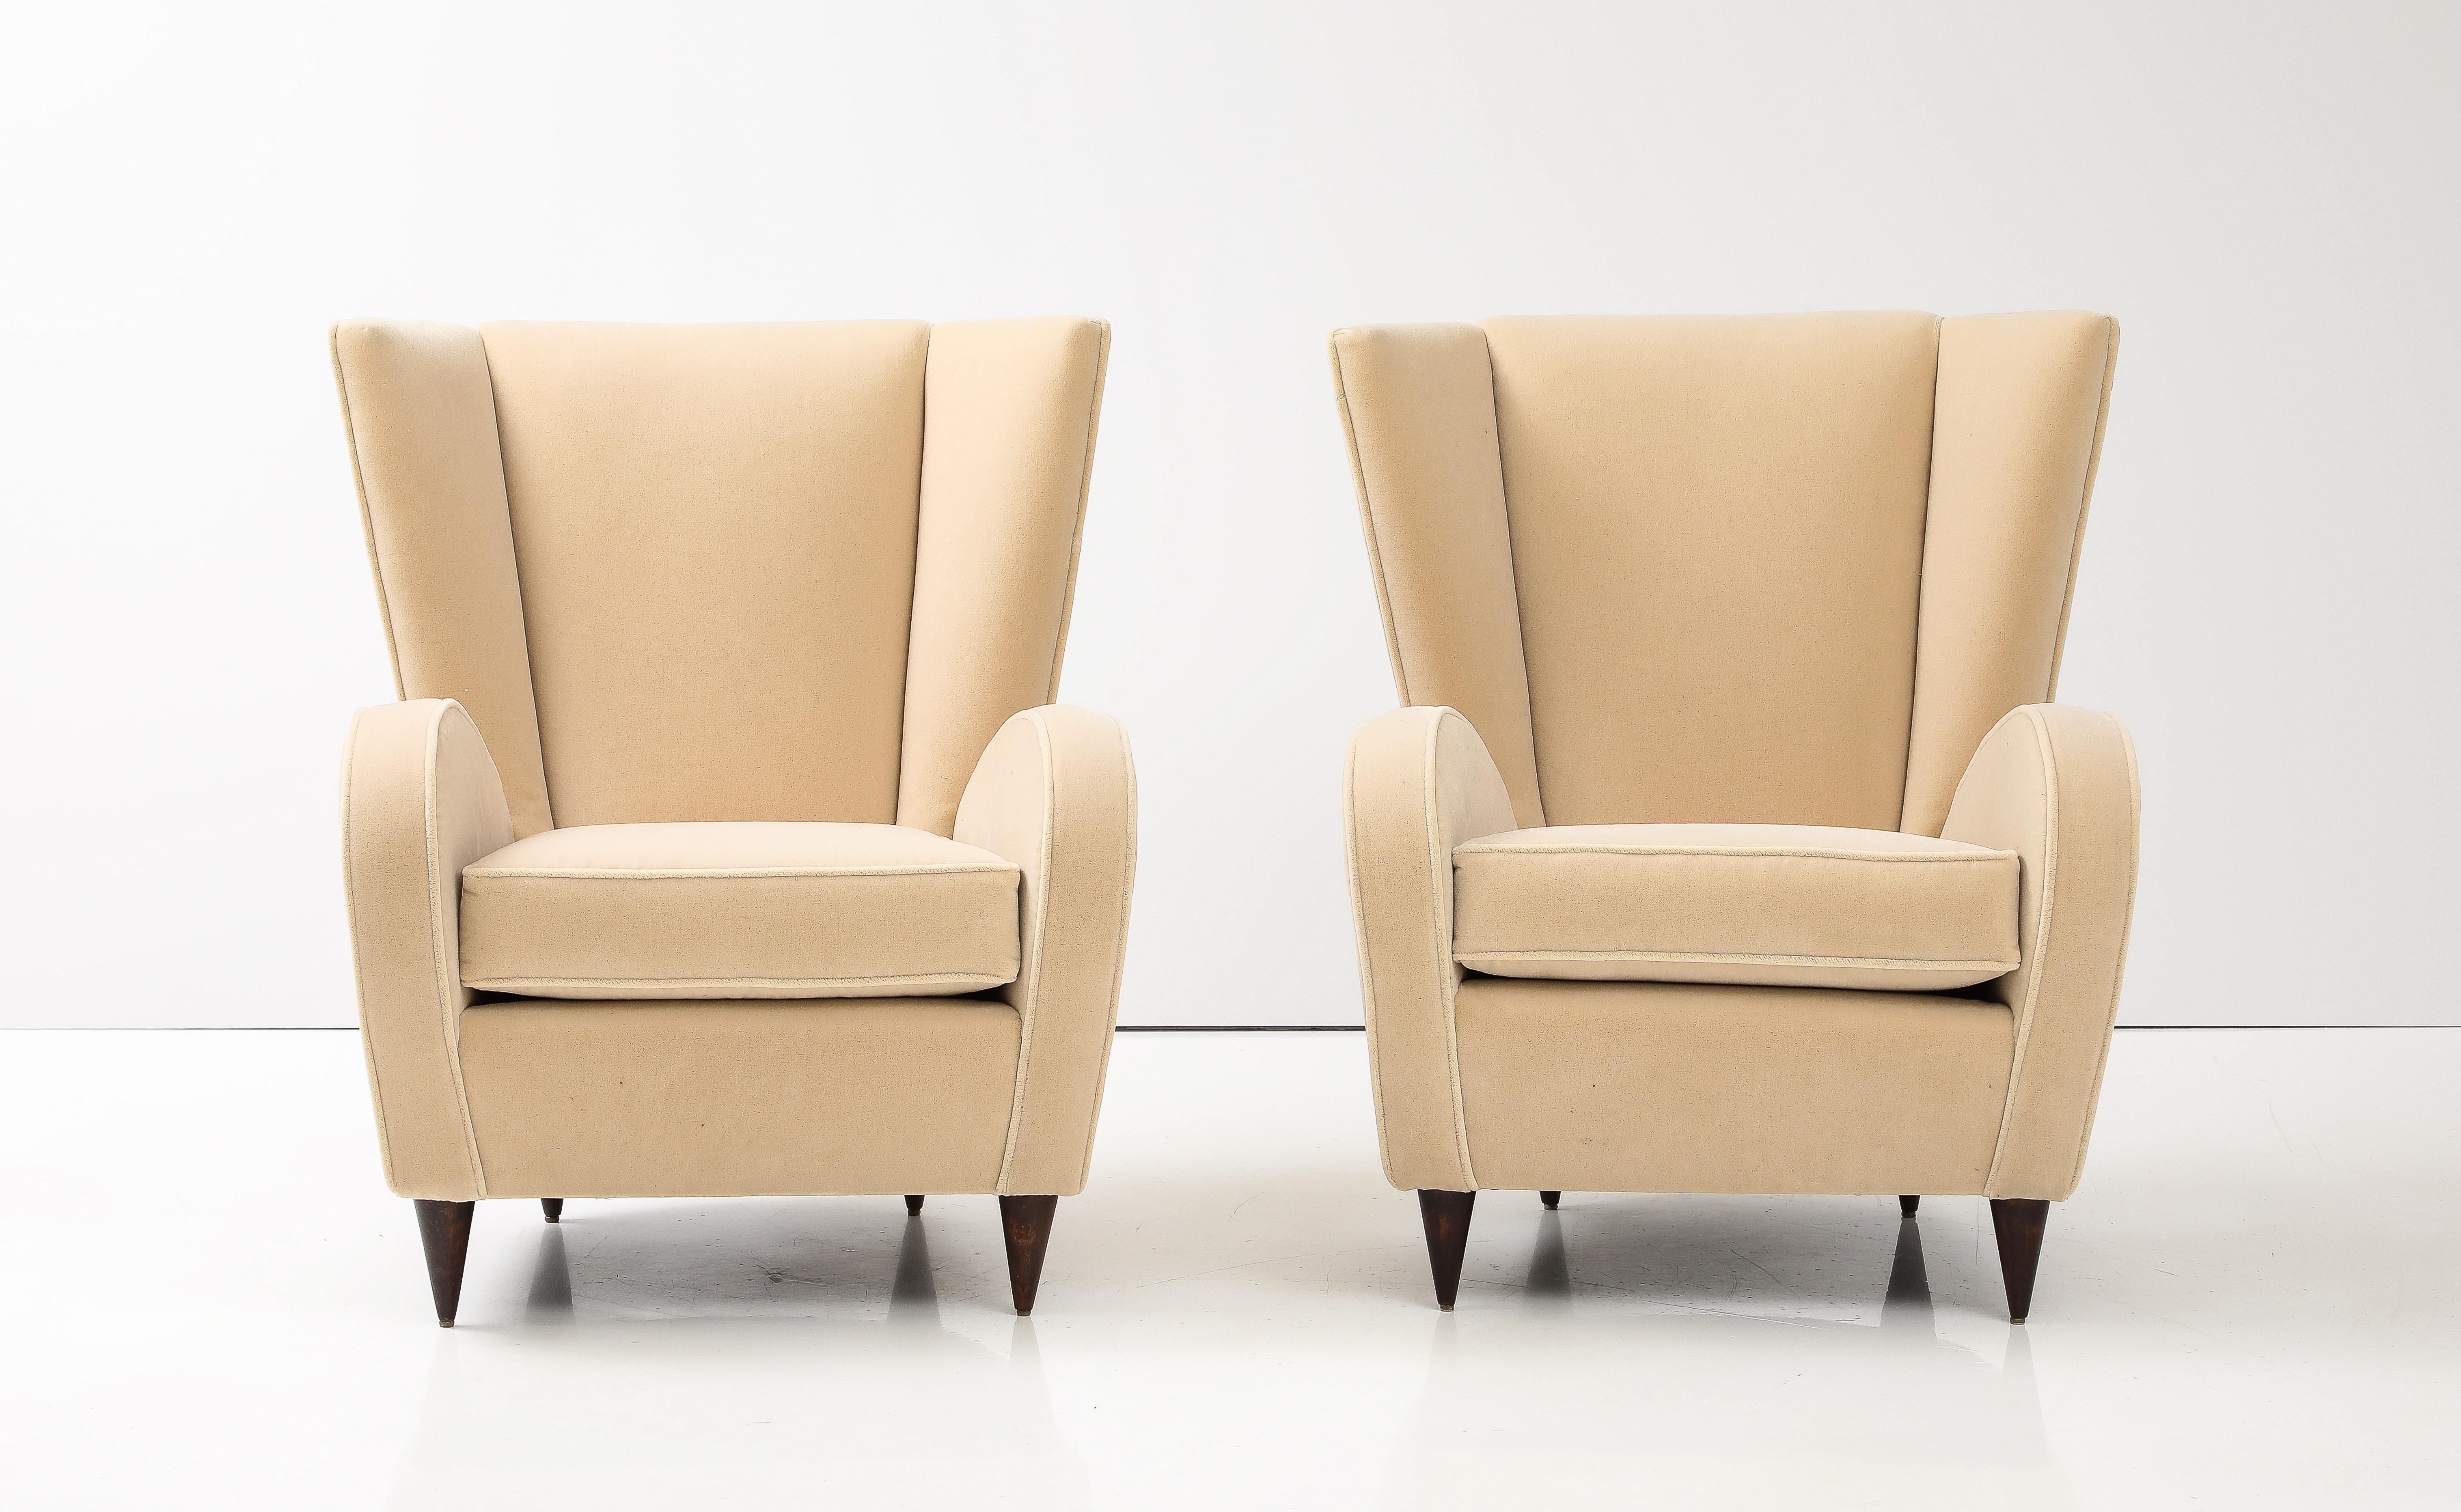  Ein Paar Sessel von Paolo Buffa, die 1950 für das Hotel Bristol in Meran, einem italienischen Ferienort, entworfen wurden. Die Stühle sind bezeichnend für Buffas charakteristischen Stil, modern und schlicht, aber mit einer Anspielung auf die